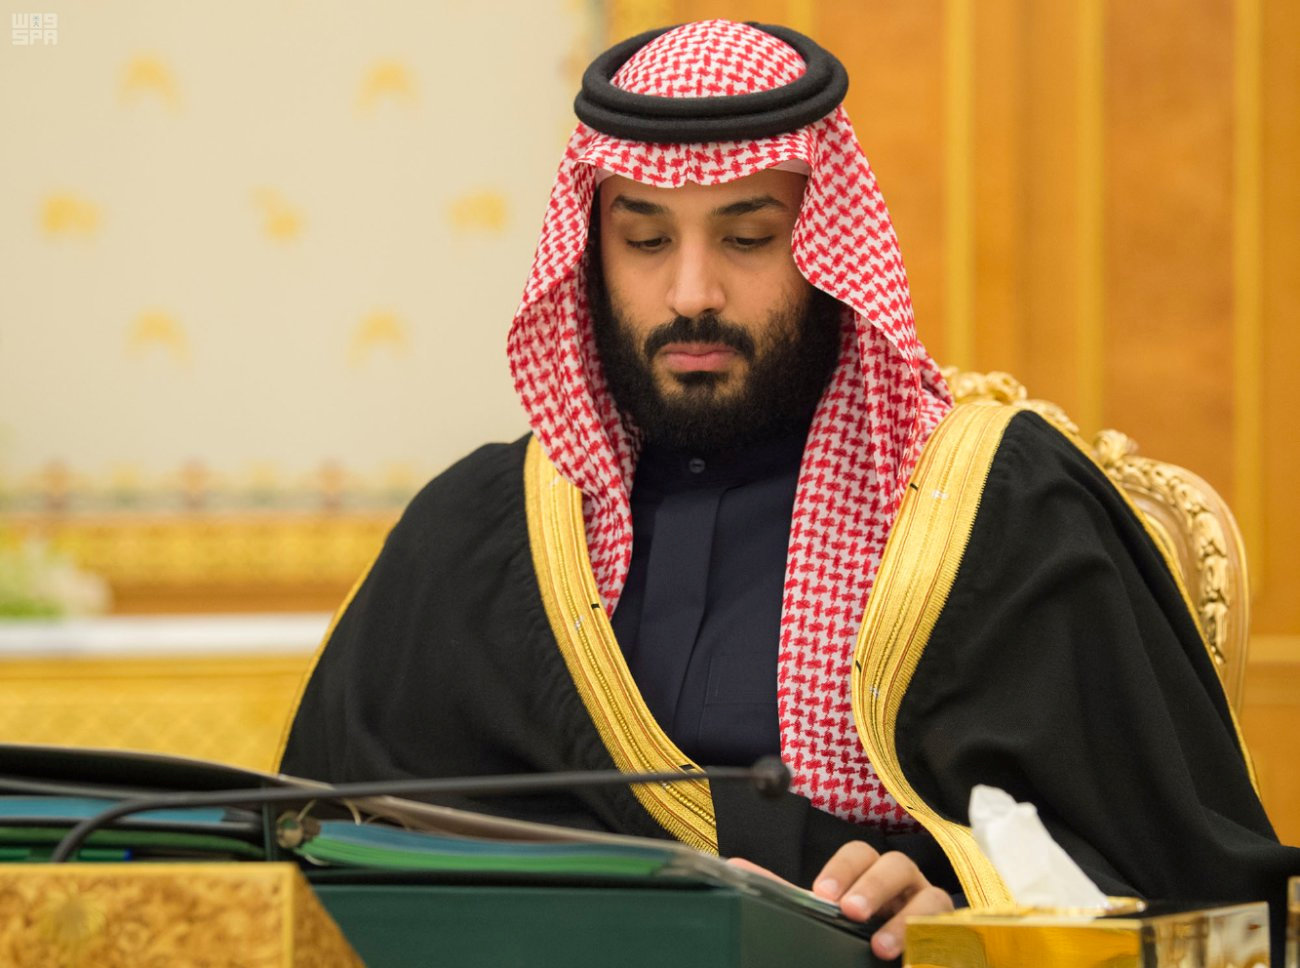 Σαουδική Αραβία: Οικονομικοί διακανονισμοί για απελευθέρωση κρατουμένων